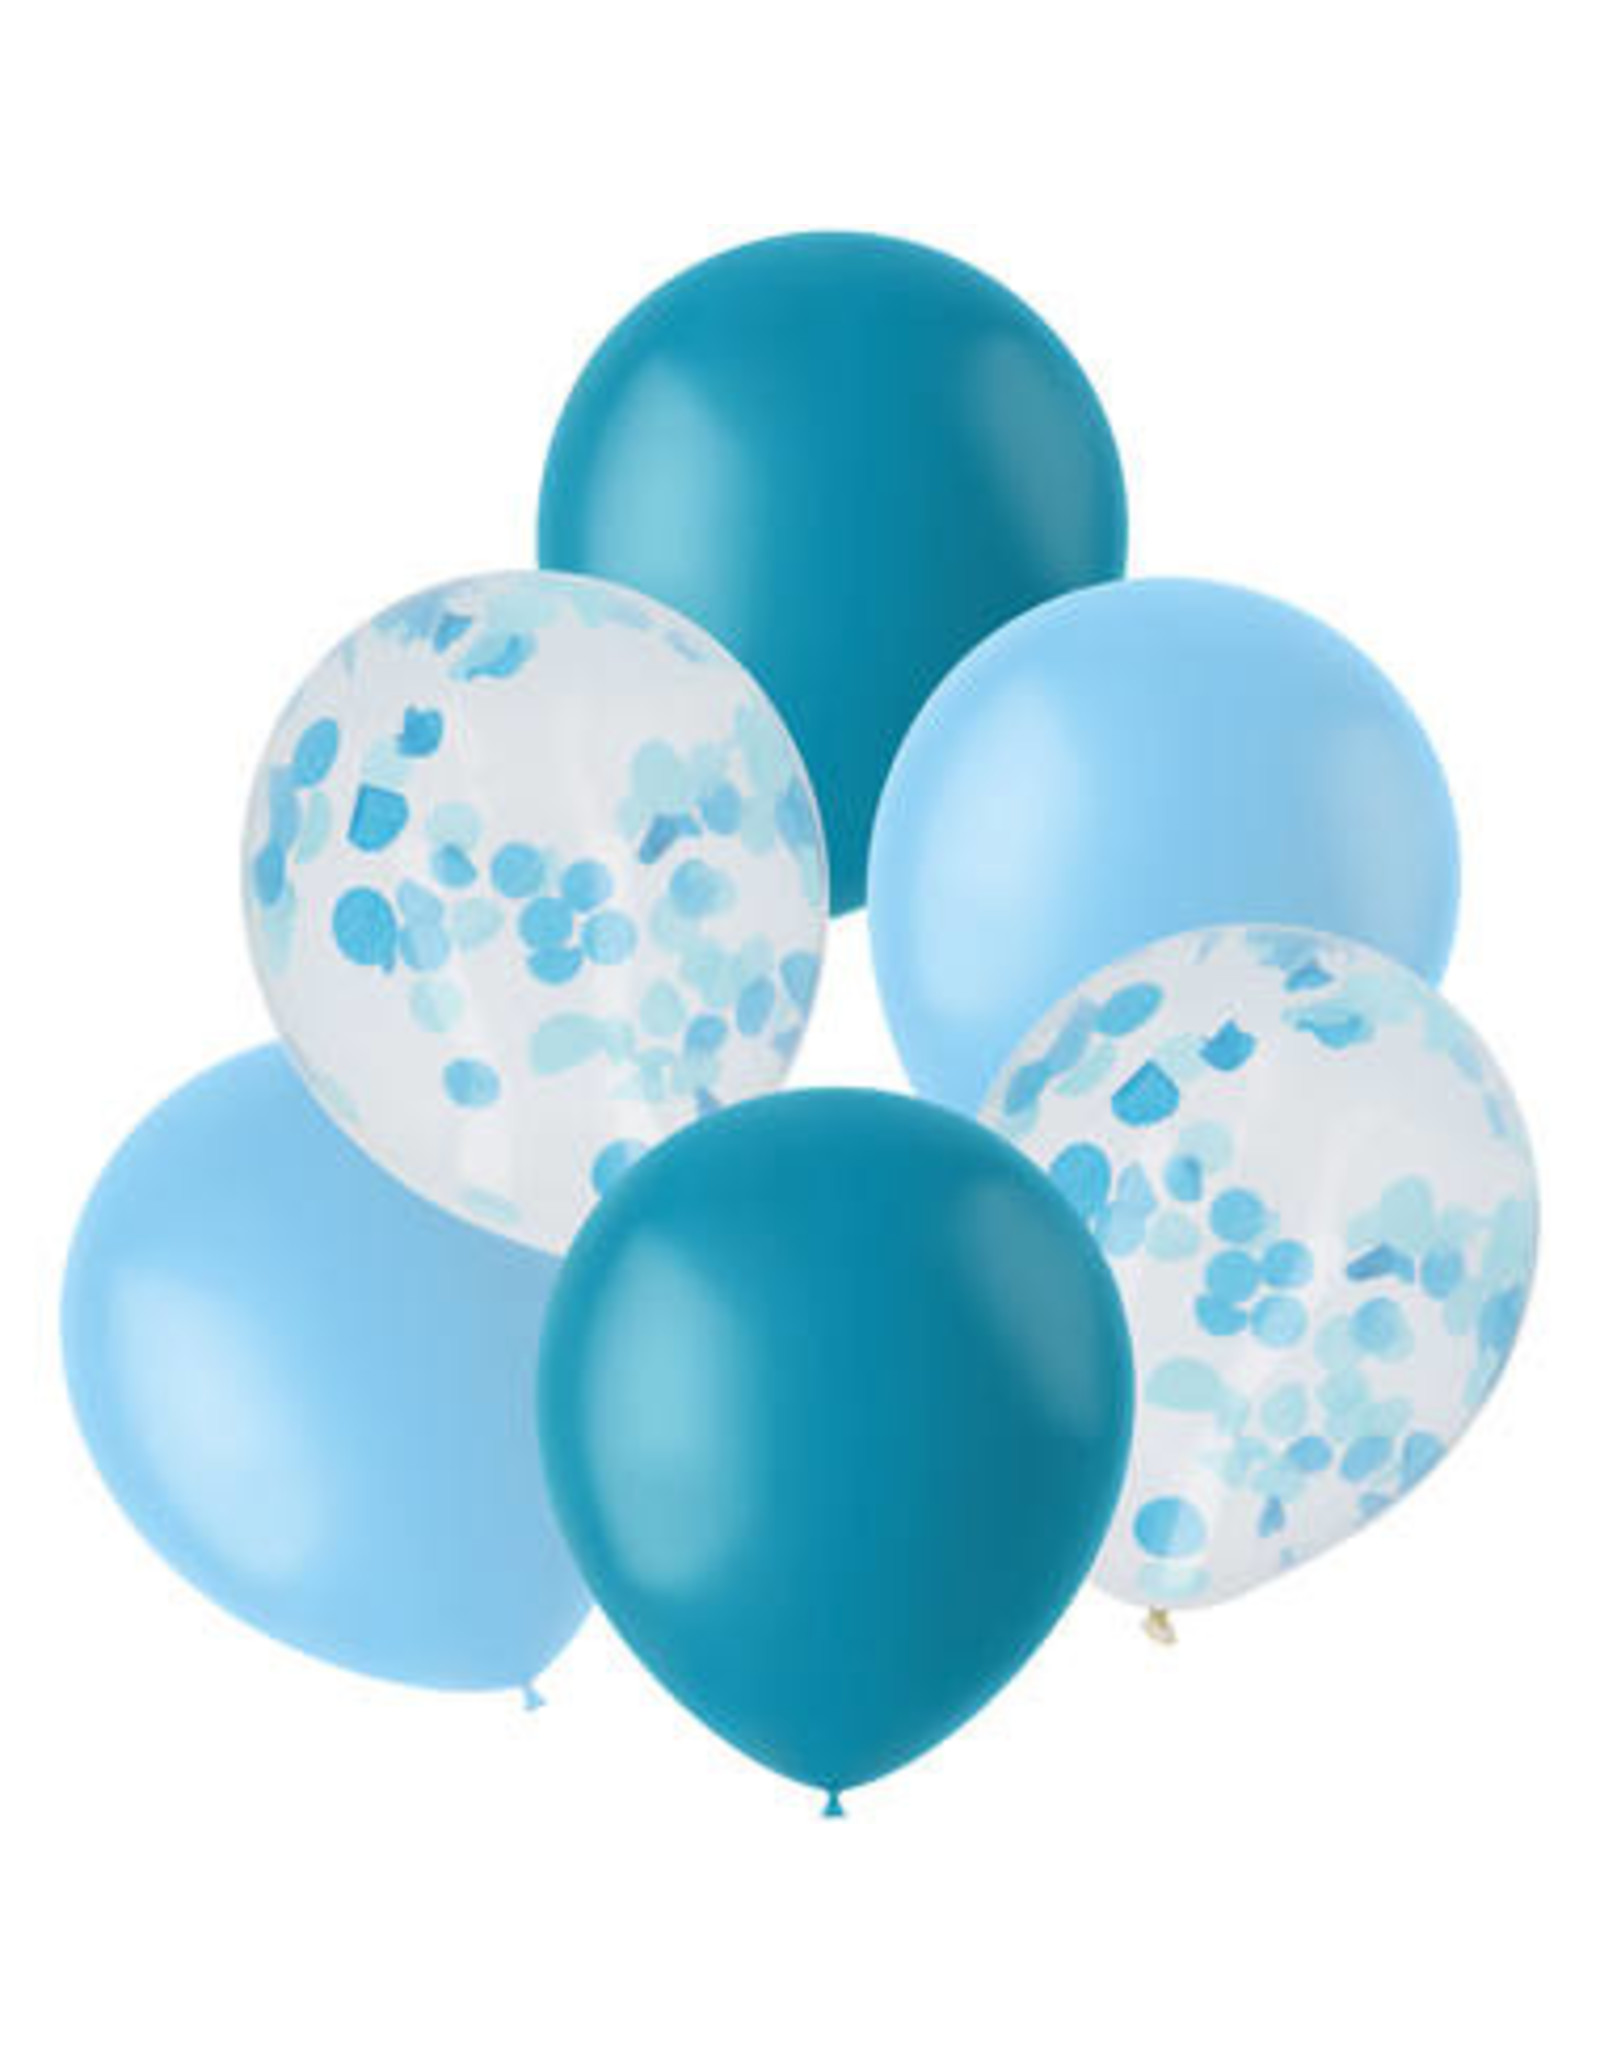 naar voren gebracht Amazon Jungle Sobriquette Ballonnen Mix Blauw 30cm - 6 stuks - WOW Party